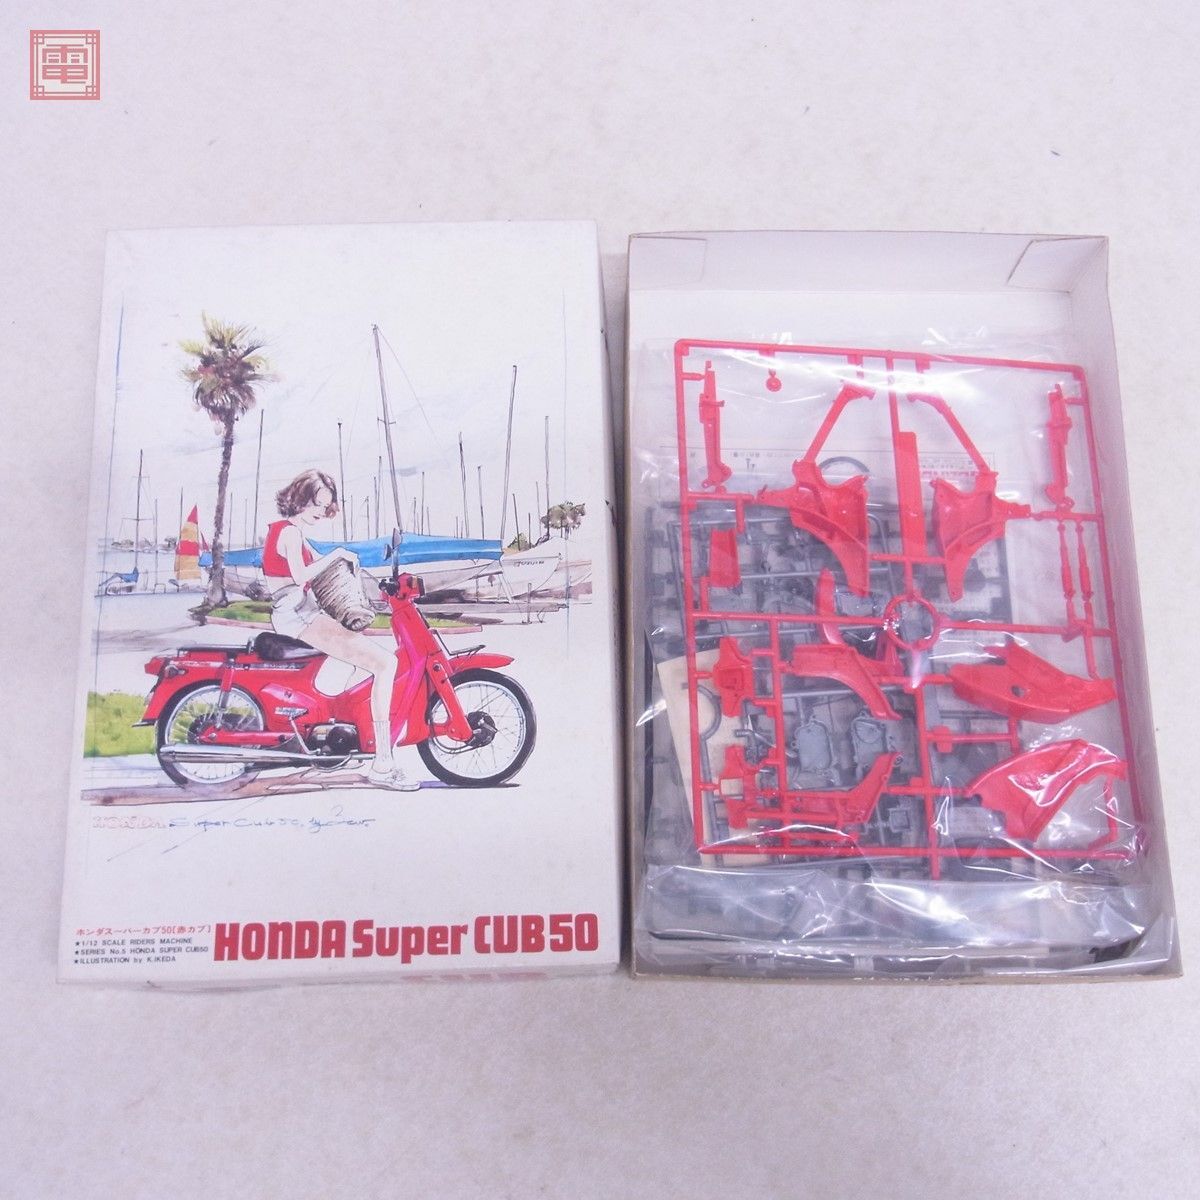  не собран Bandai 1/12 Honda Super Cub 50 красный Cub BANDAI HONDA Super CUB[20